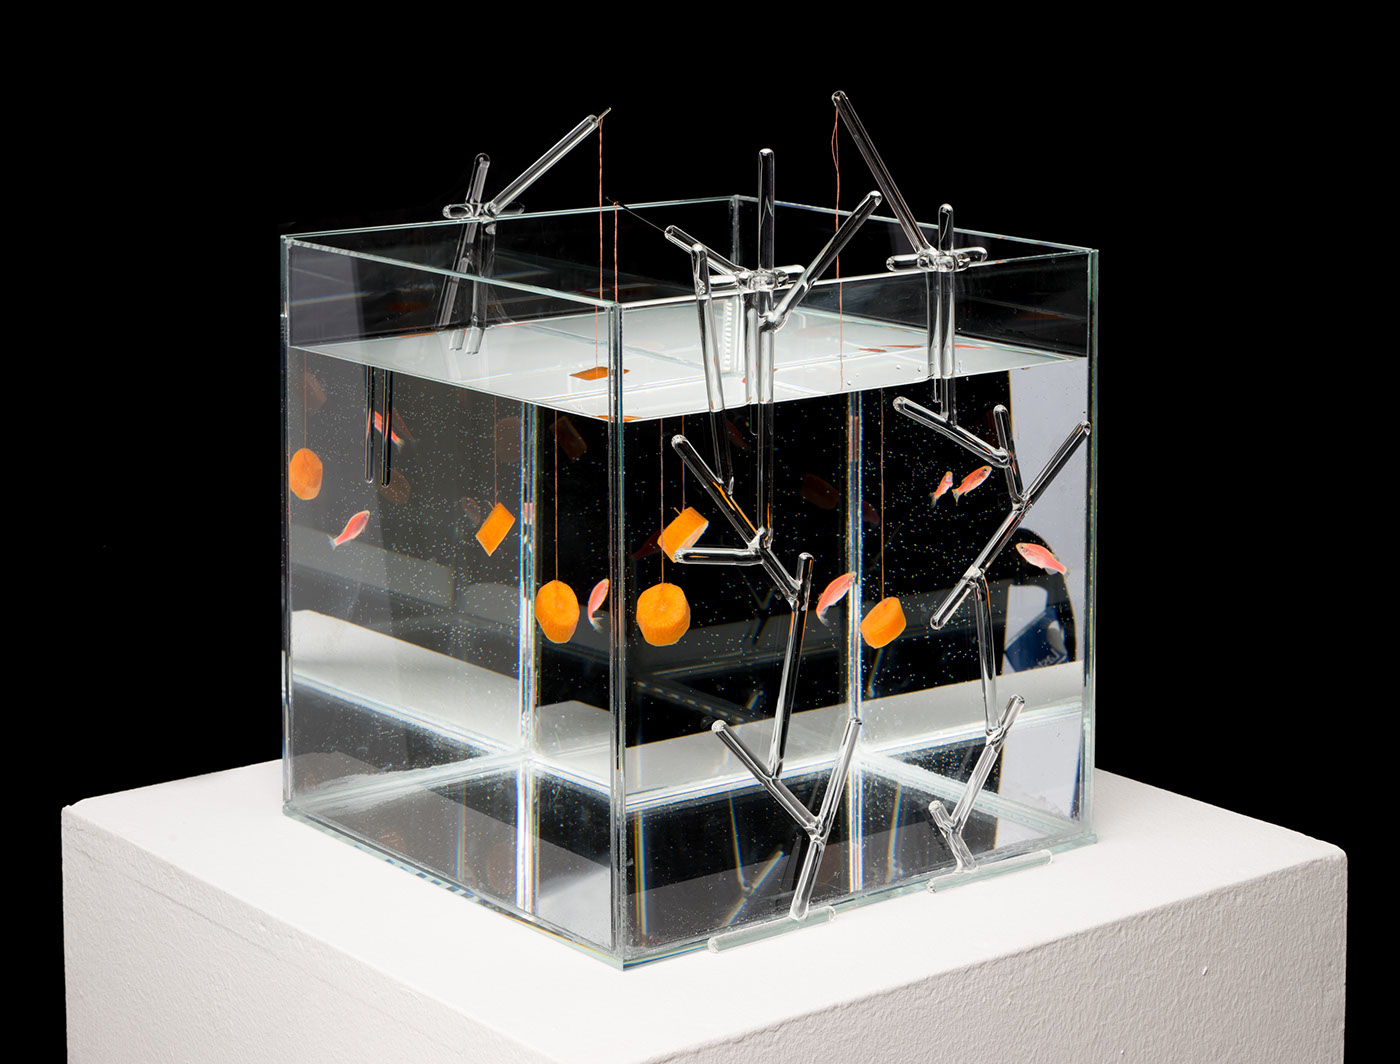 aquarium fish luxury equipments interiordesign glass design glass sculpture aquatic design